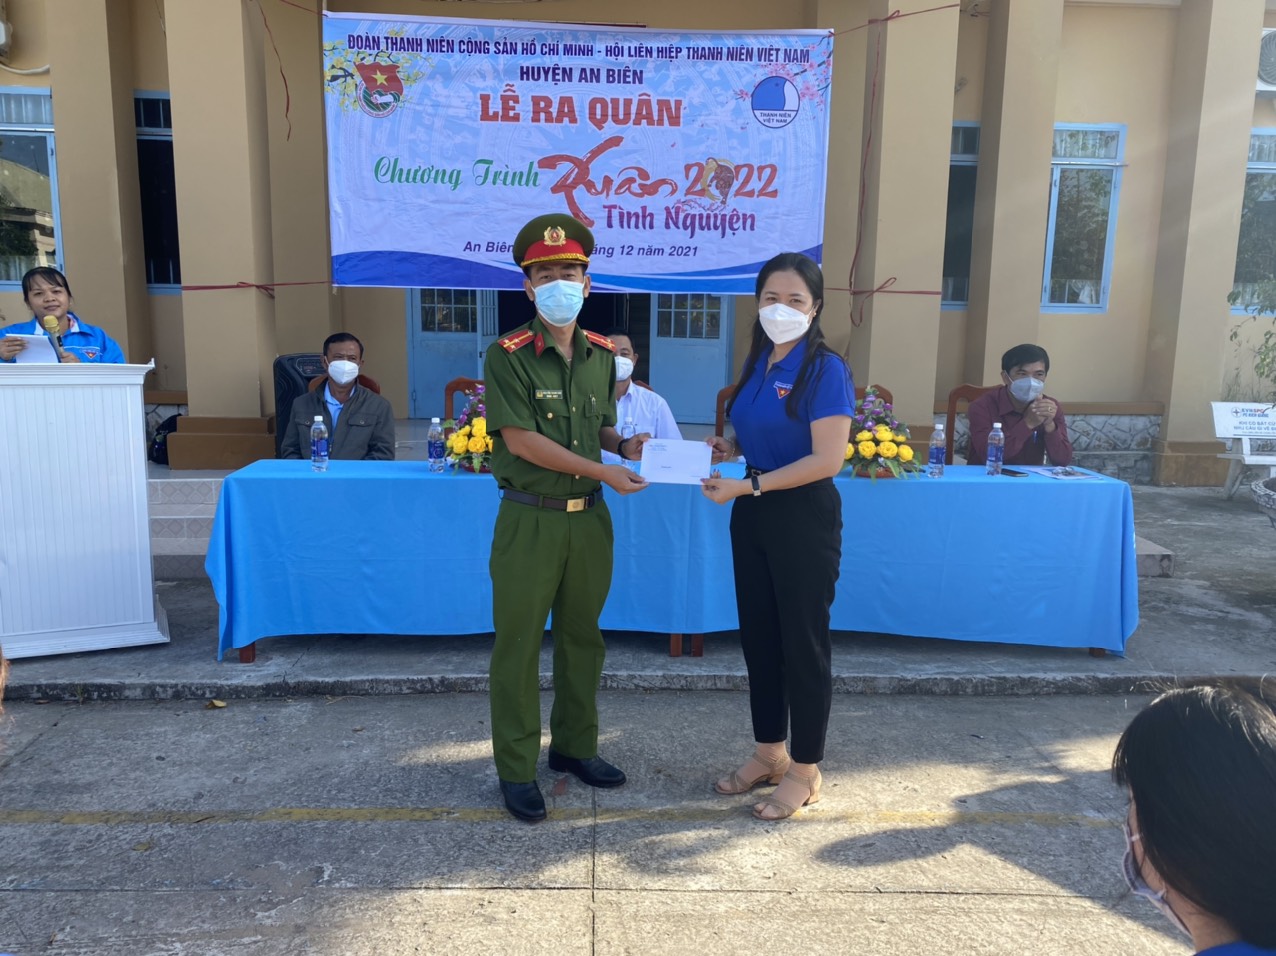 Đ/c Nguyễn Thanh Vân, Uỷ viên Ban Thường vụ Đoàn cơ ở Trại giam Kênh 7 trao 6 xuất quà cho đại diện Hội Cựu Thanh niên xung phong huyện An Biên.